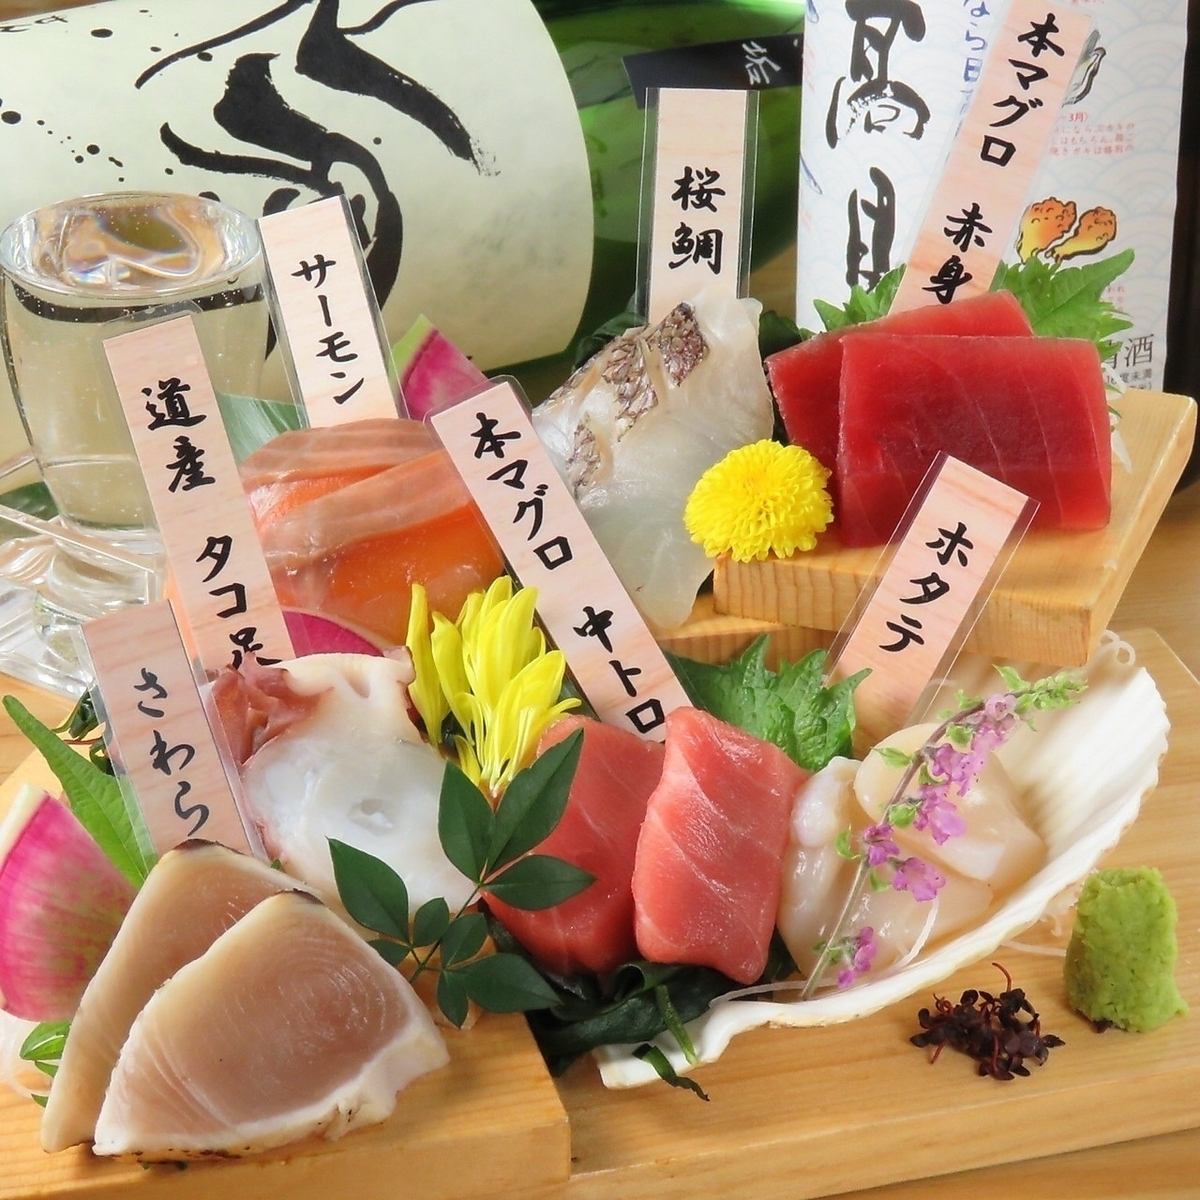 生鱼片红色！生鱼片★550日元/人♪我们还拥有新鲜的肉生鱼片。